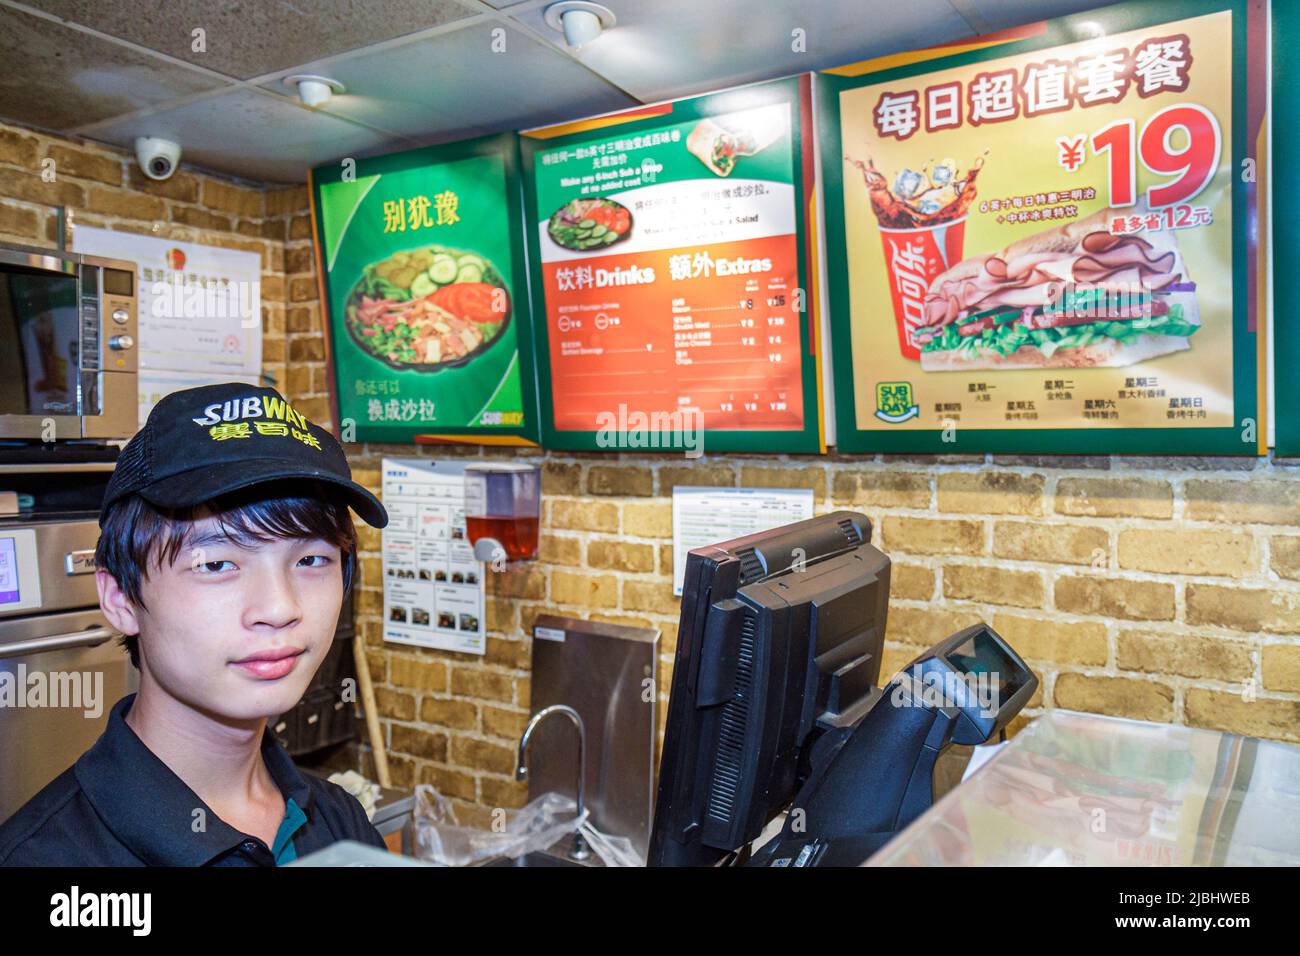 Shanghai China,Chinese Jing'an District,Nanjing Road West,Subway sandwich shop,cashier menu Mandarin hanzi working worker employee staff inside Stock Photo